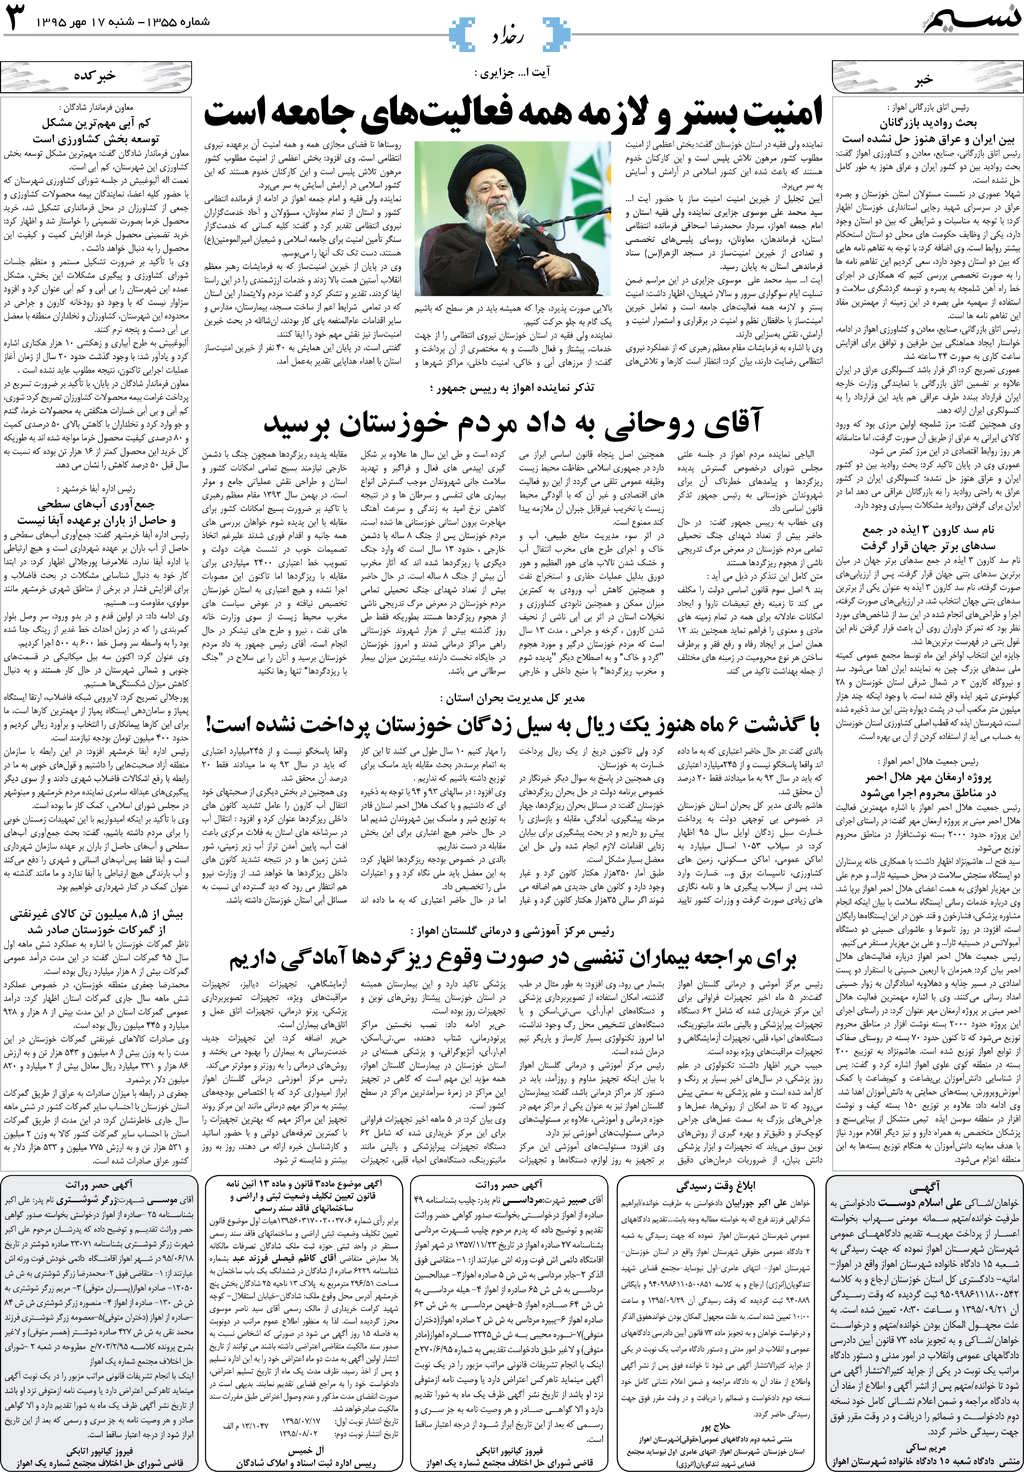 صفحه رخداد روزنامه نسیم شماره 1355